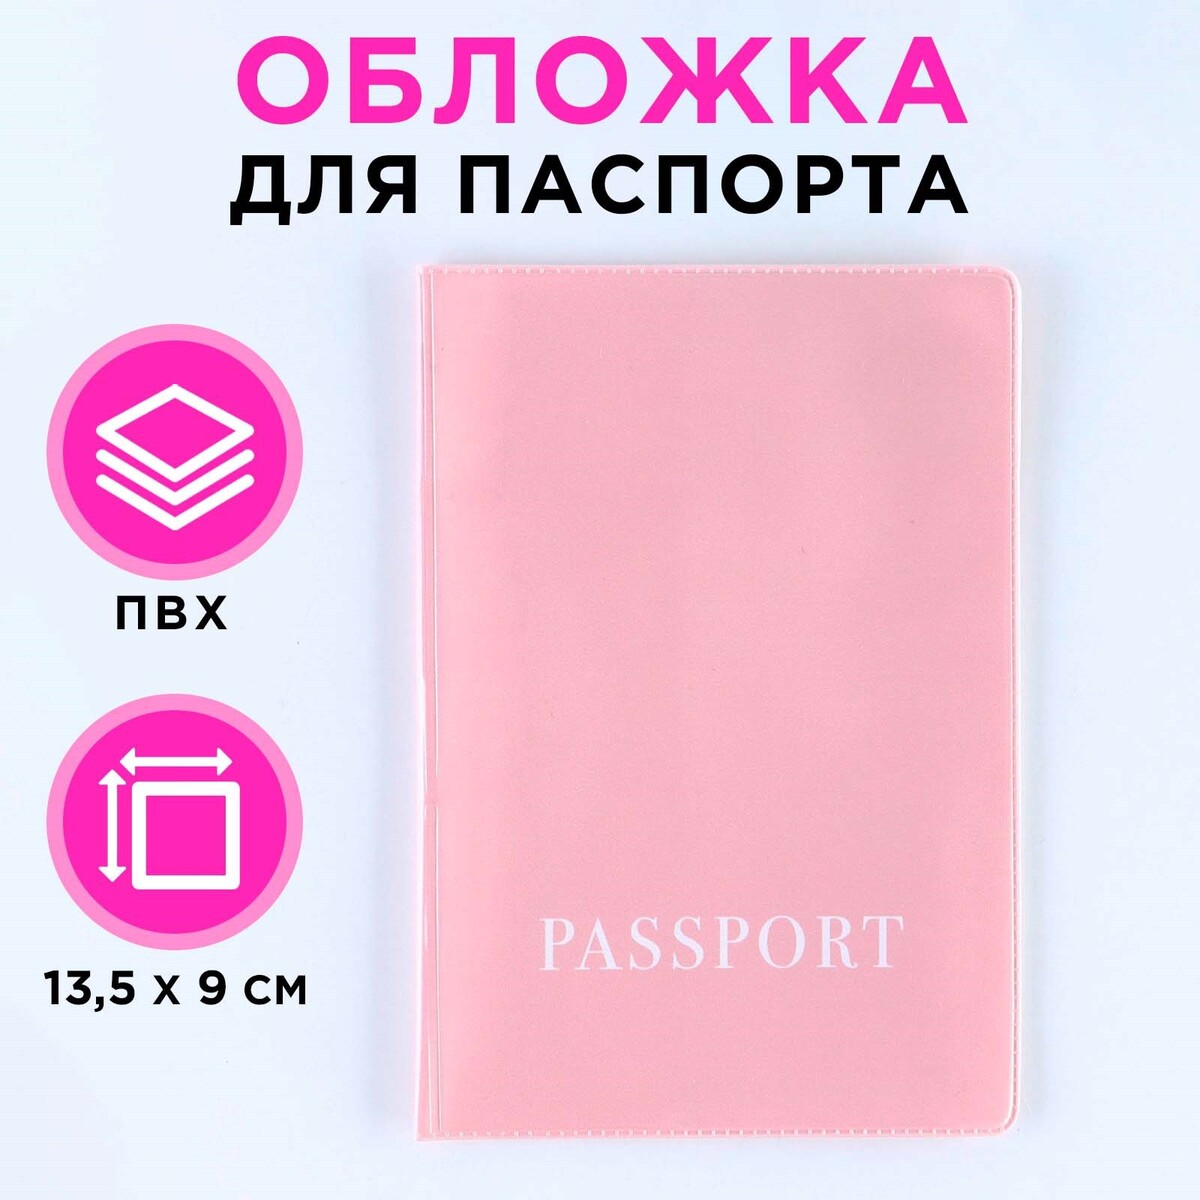 Обложка для паспорта, пвх, оттенок пыльная роза